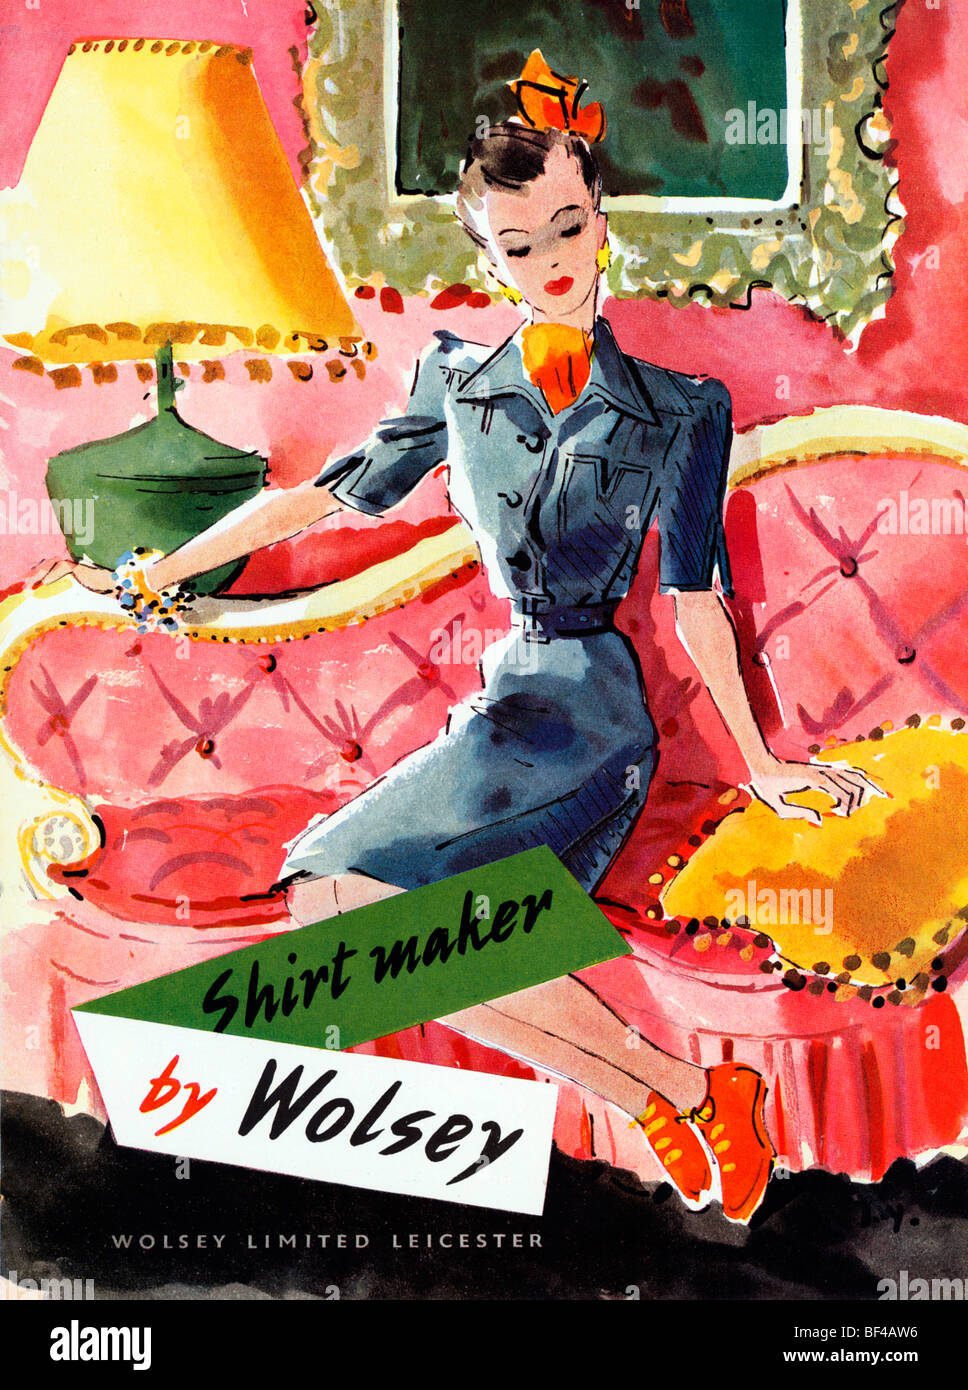 Wolsey Shirtmaker, 1930er Jahre Werbung für den englischen Mode-Hersteller von Leicester Stockfoto